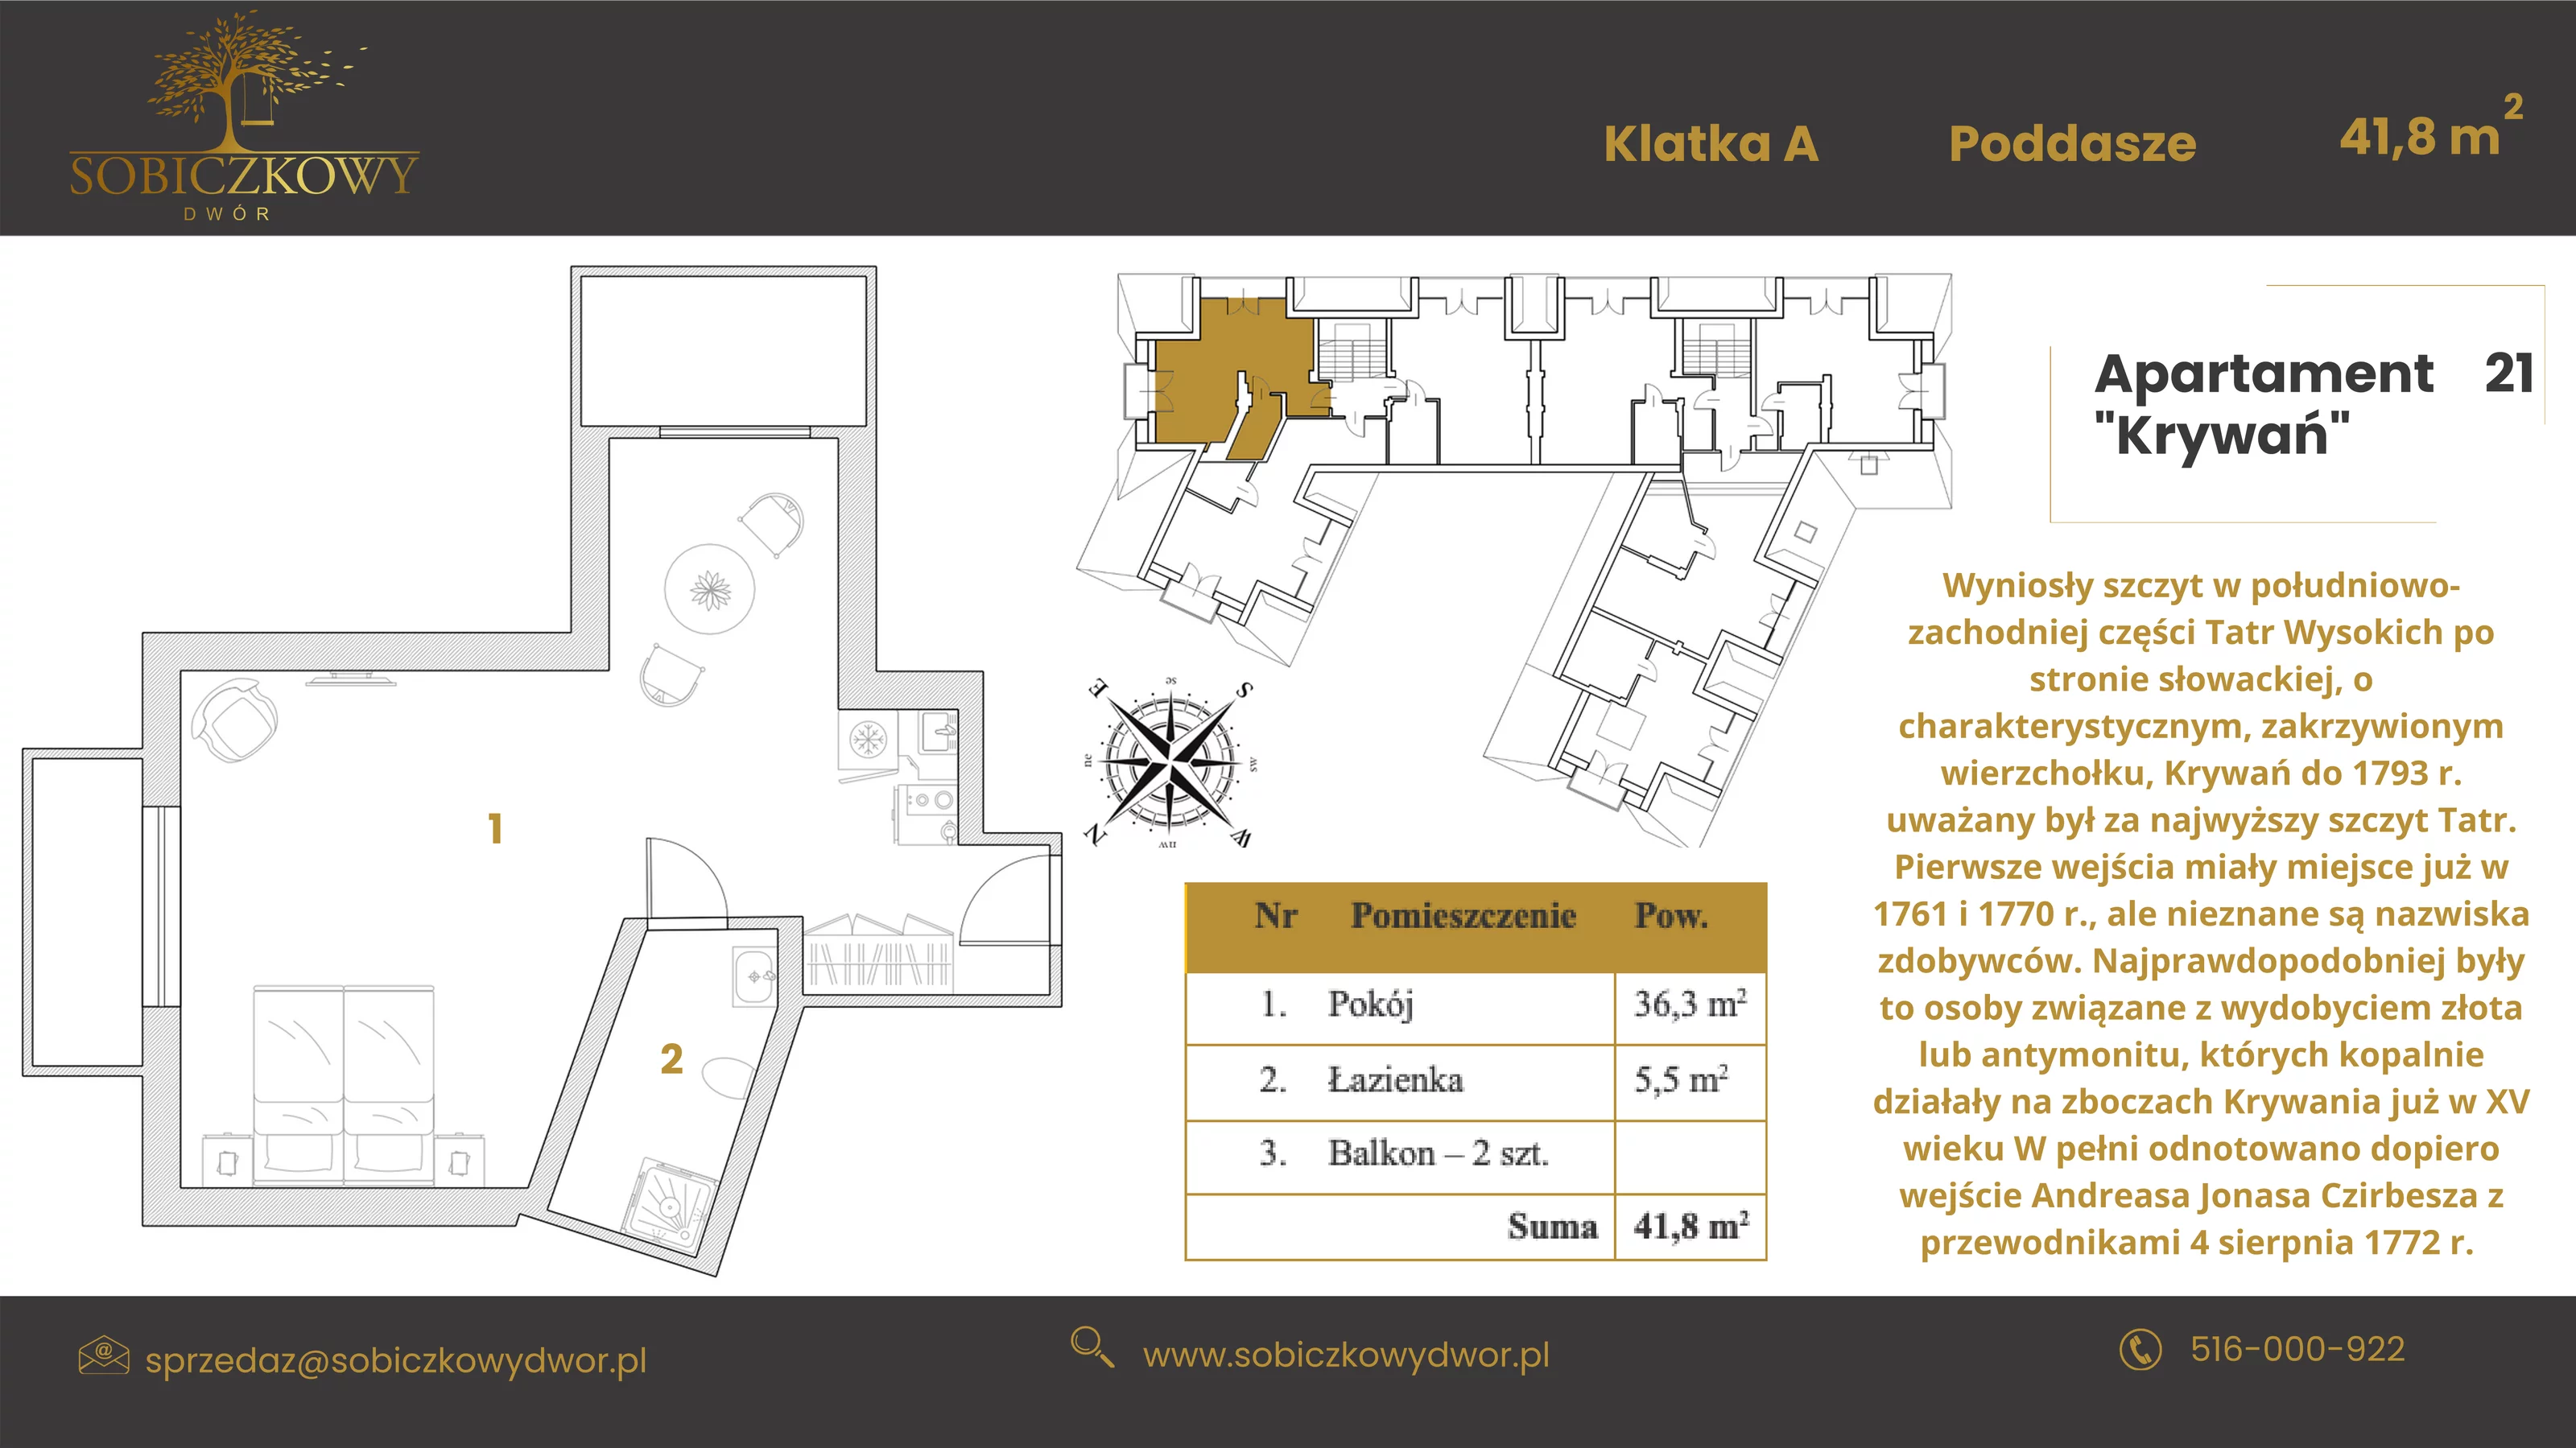 Apartament 41,30 m², piętro 2, oferta nr 21 "Krywań", Sobiczkowy Dwór, Kościelisko, ul. Sobiczkowa Bór 1